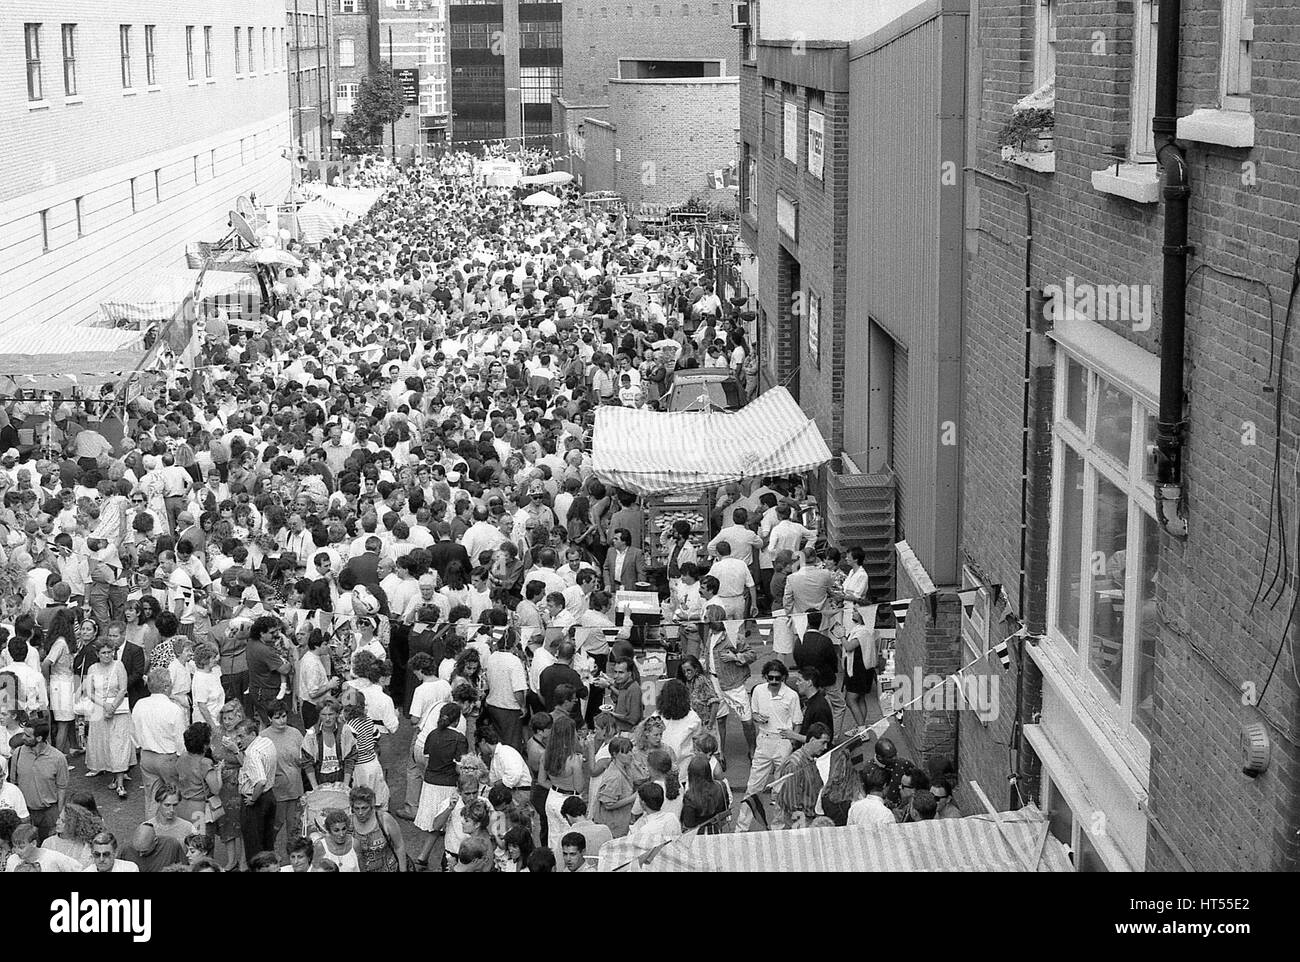 Massen von Menschen beteiligen sich die jährliche Italienisch Street Party am Warner Street in Clerkenwell, London am 21. Juli 1990. Die Partei folgt der religiösen Prozession von St.Mary Carmel in traditionell italienisches Viertel von London war. Stockfoto